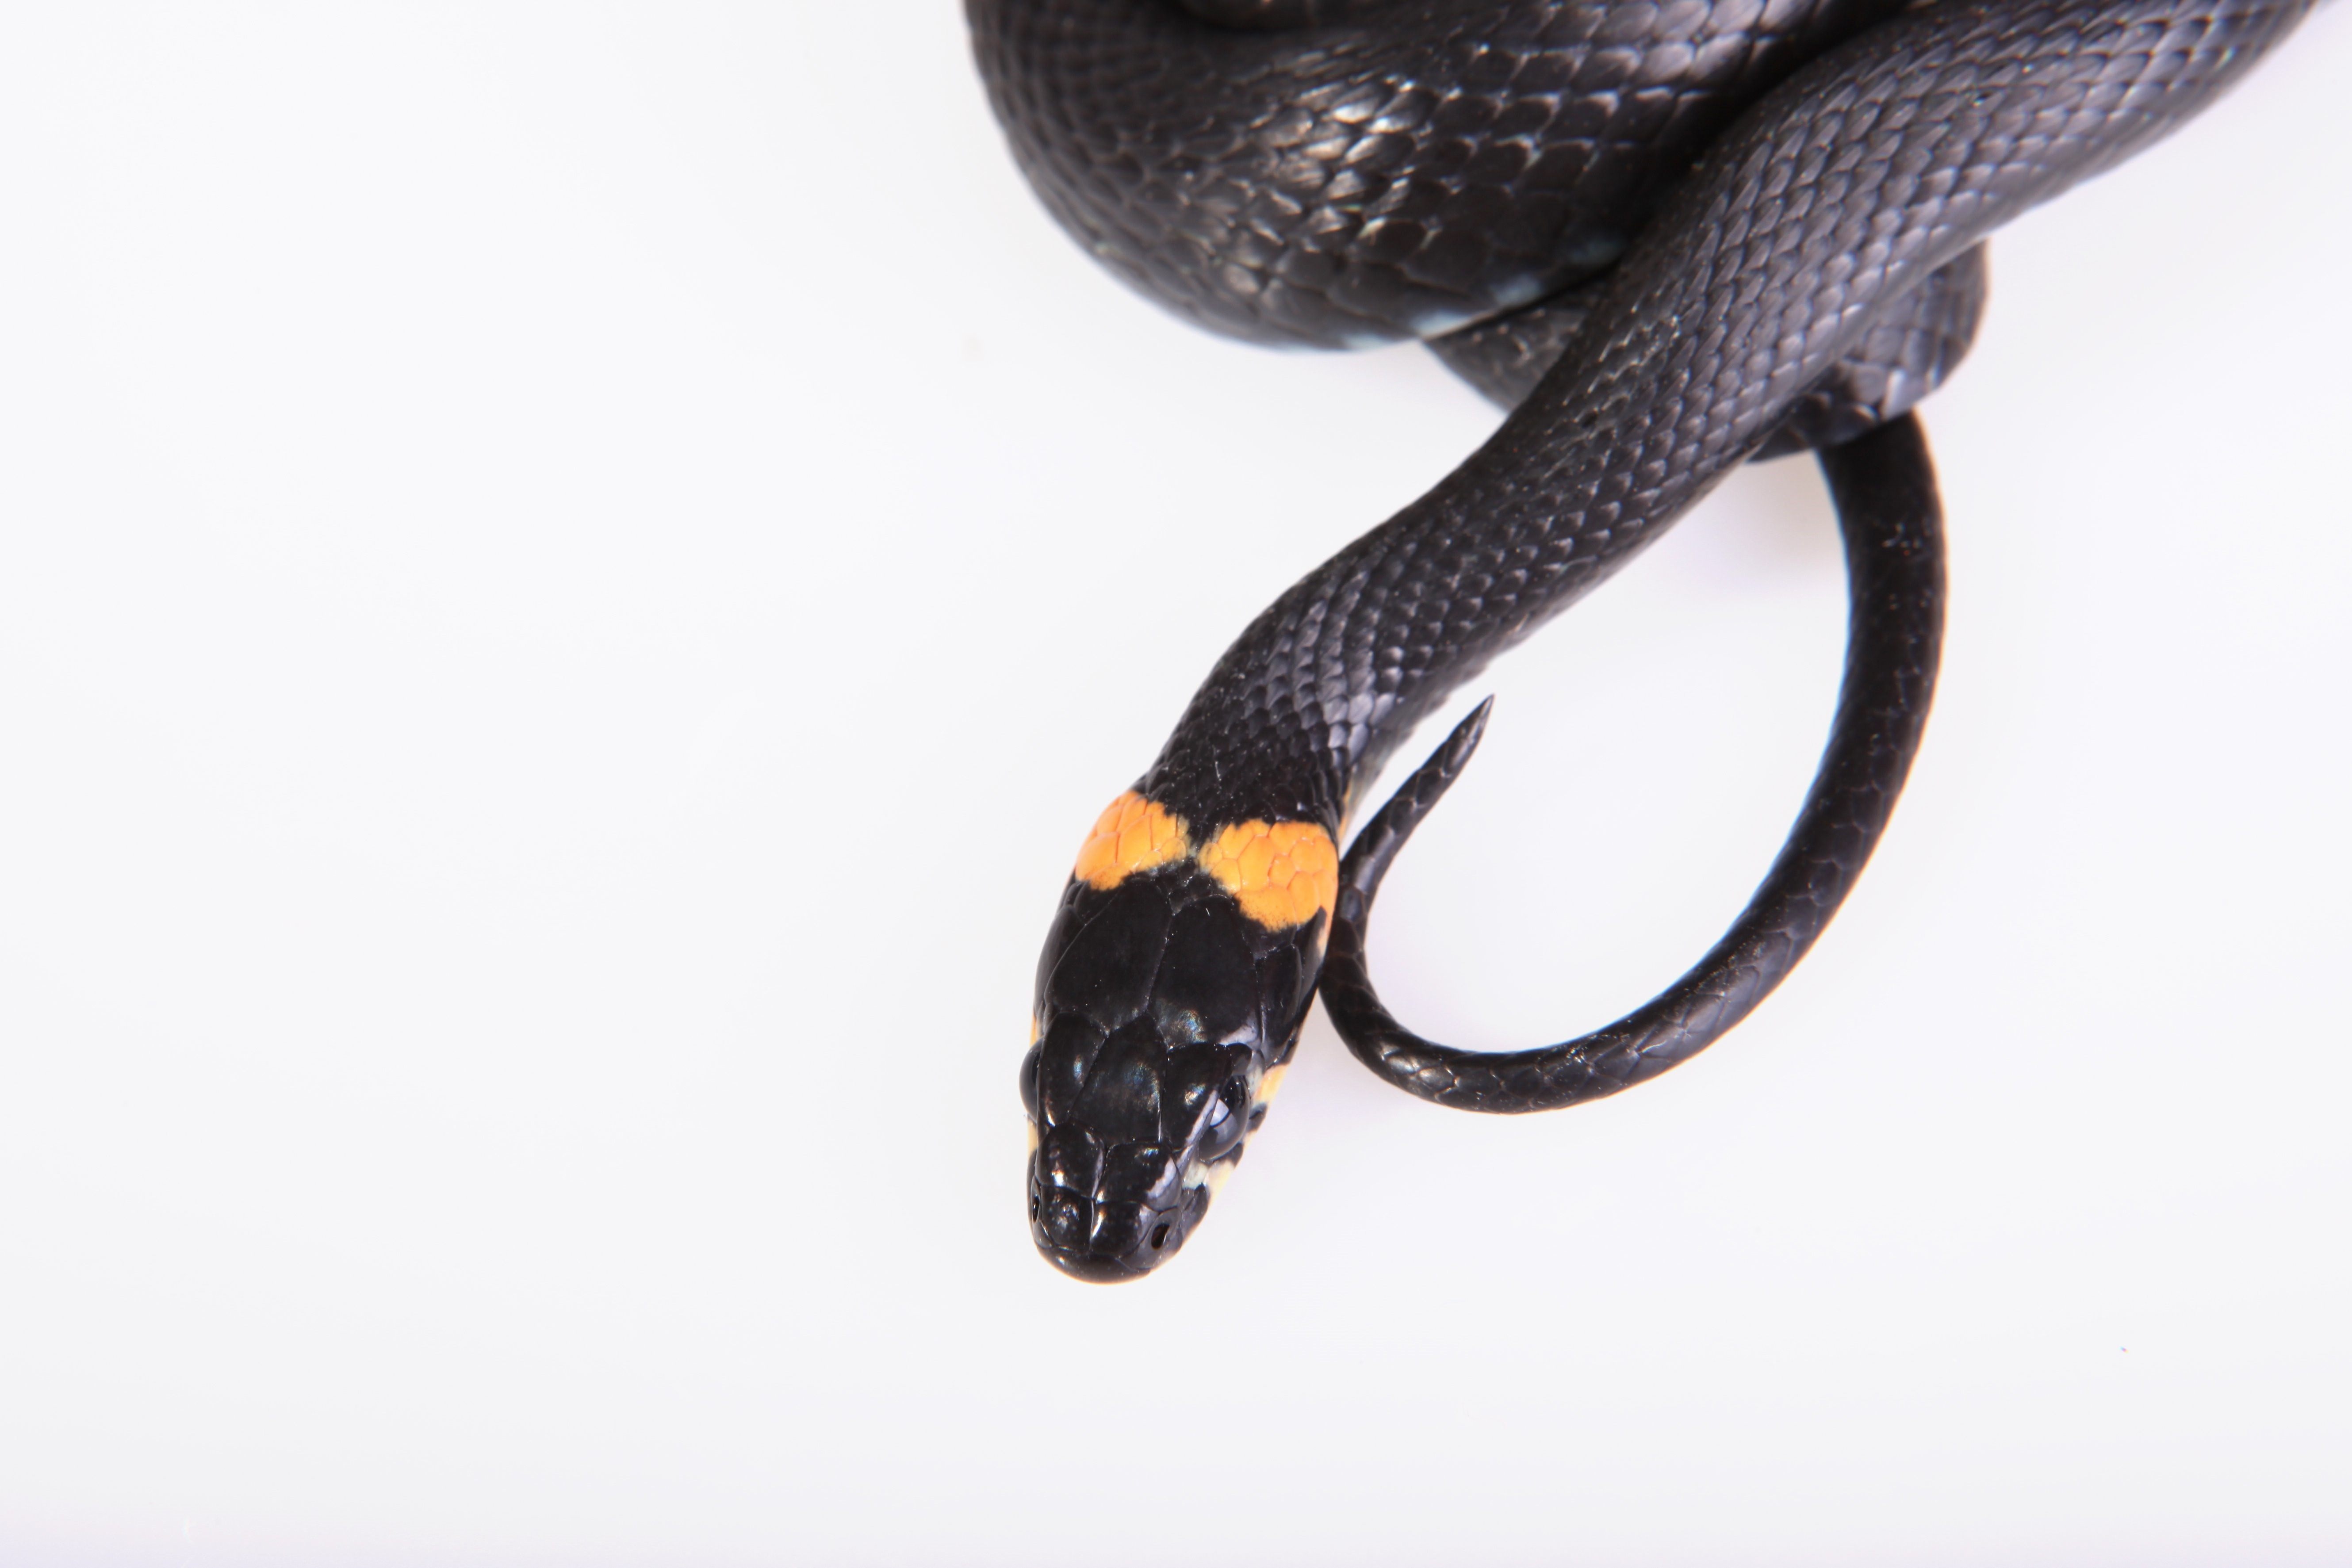 Змея с оранжевыми пятнами на голове название и фото